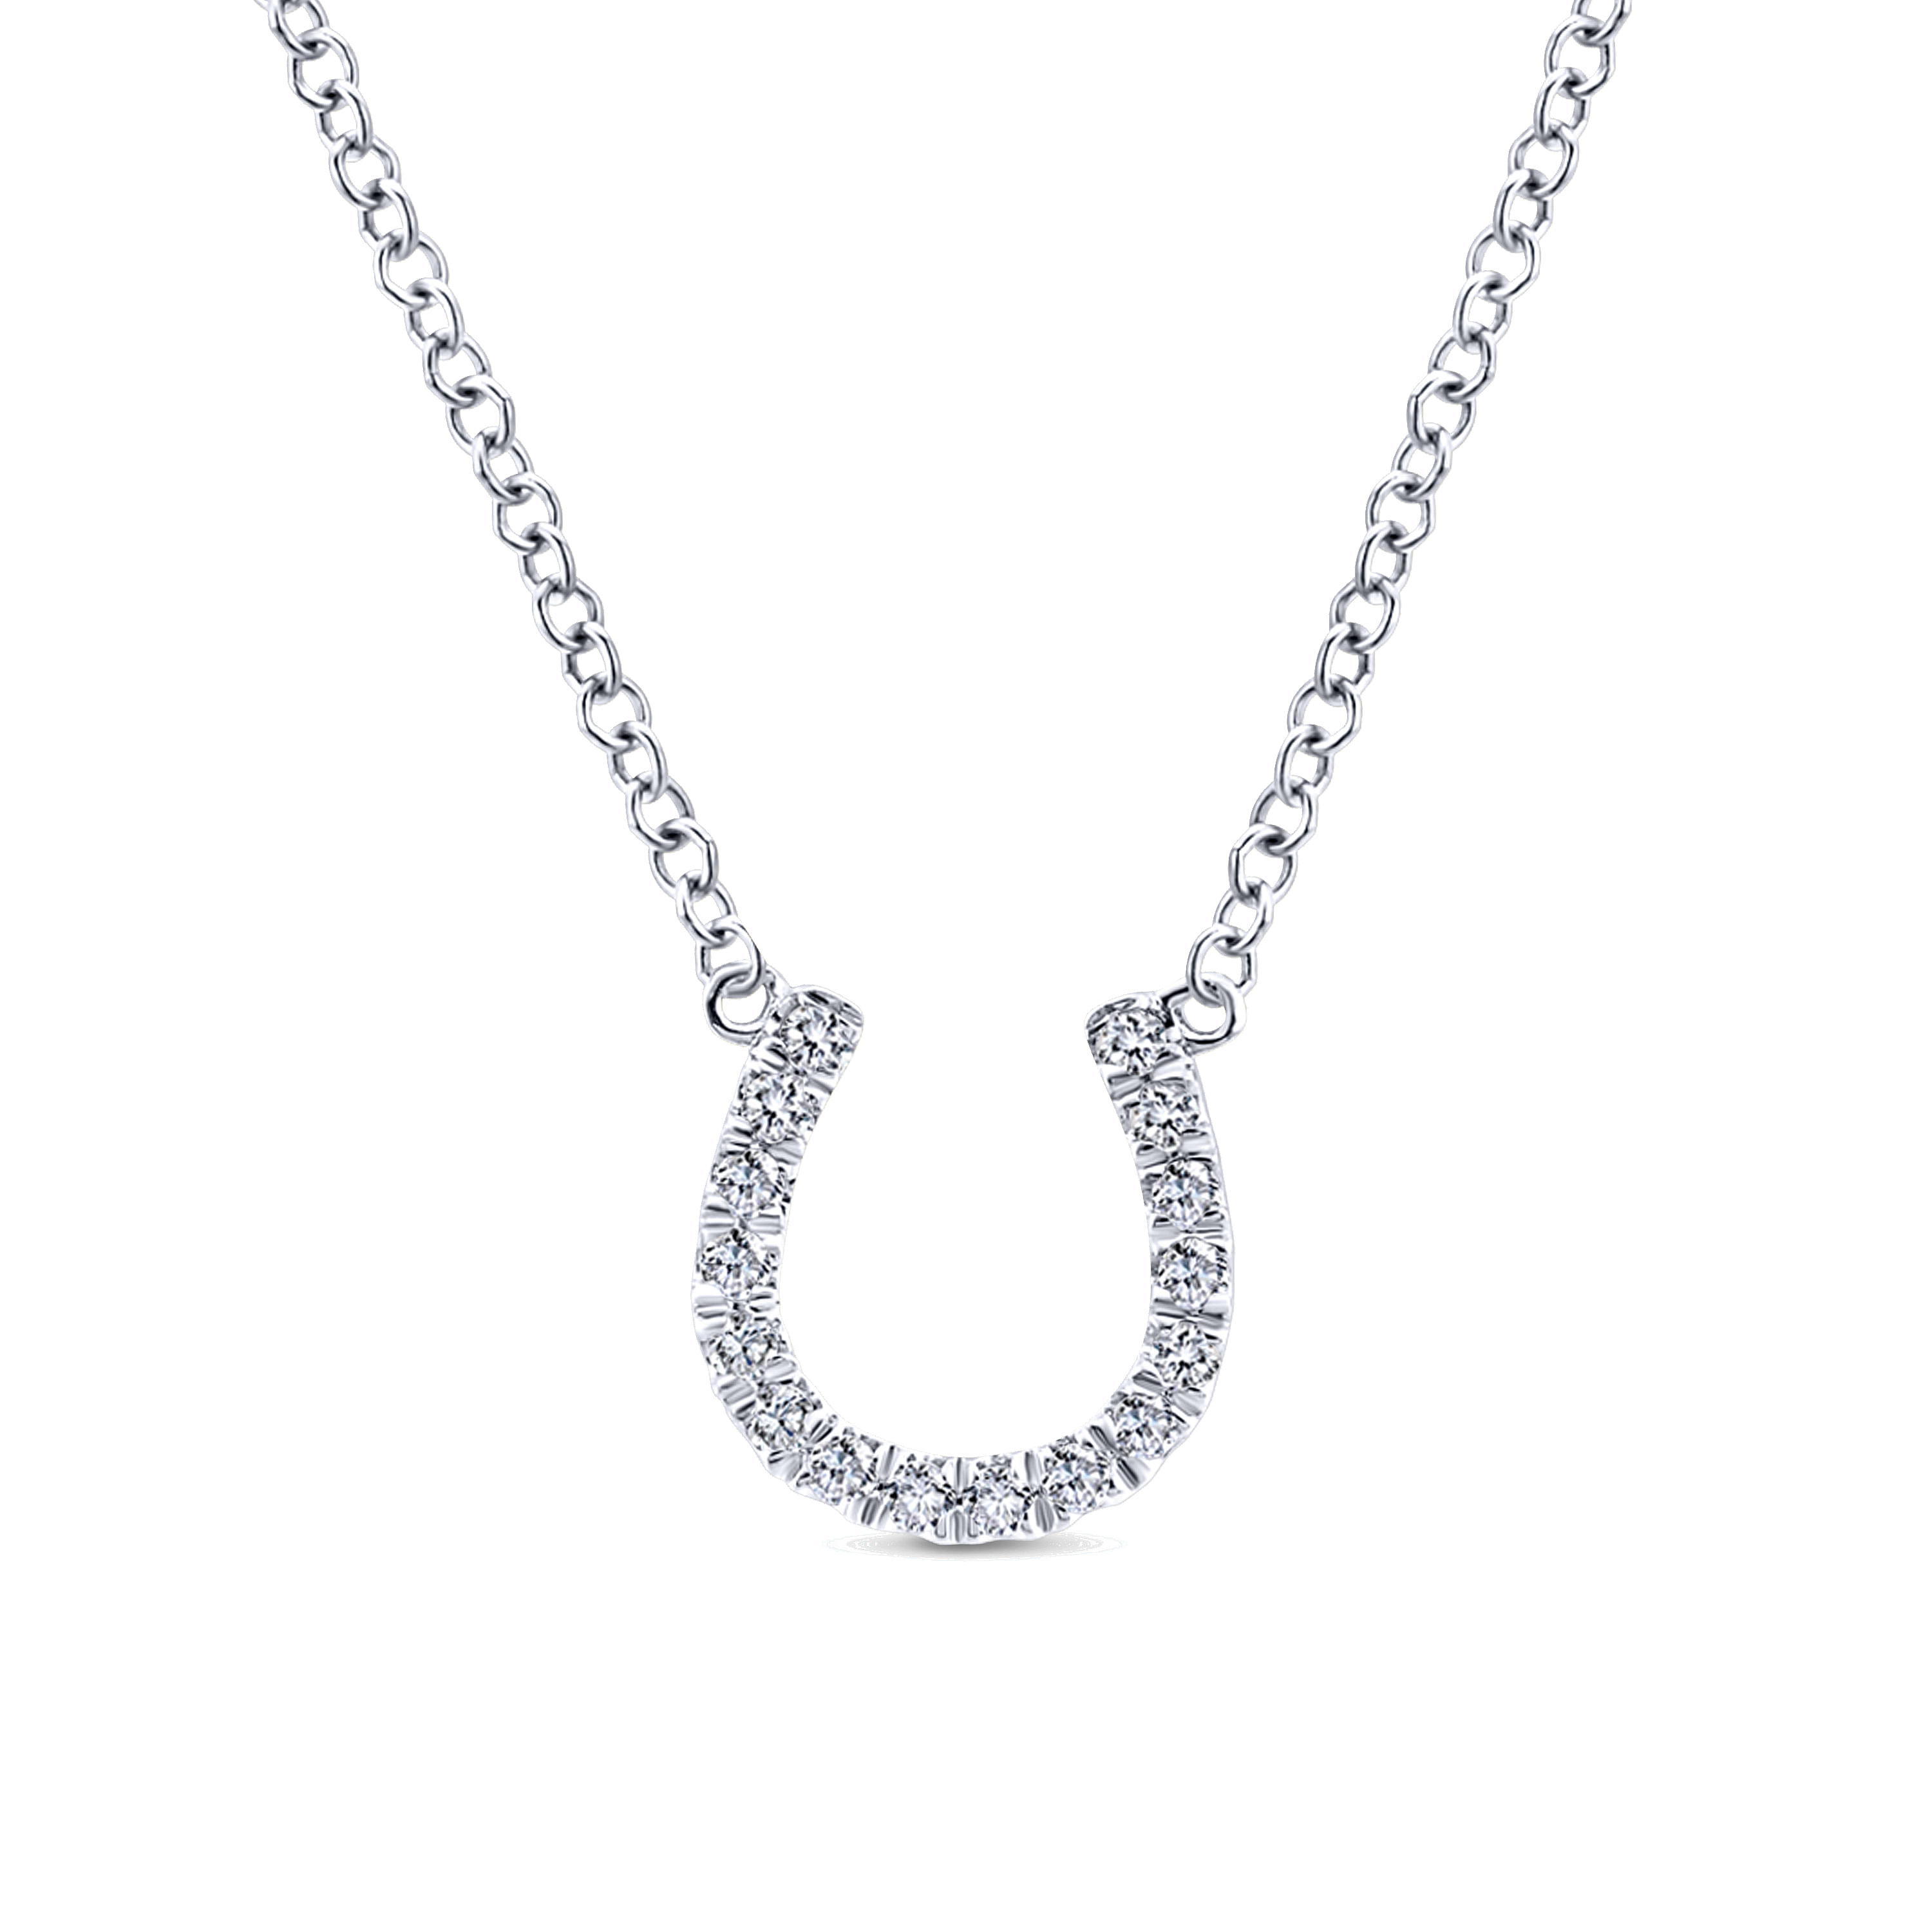 14K White Gold Diamond Horseshoe Pendant Necklace